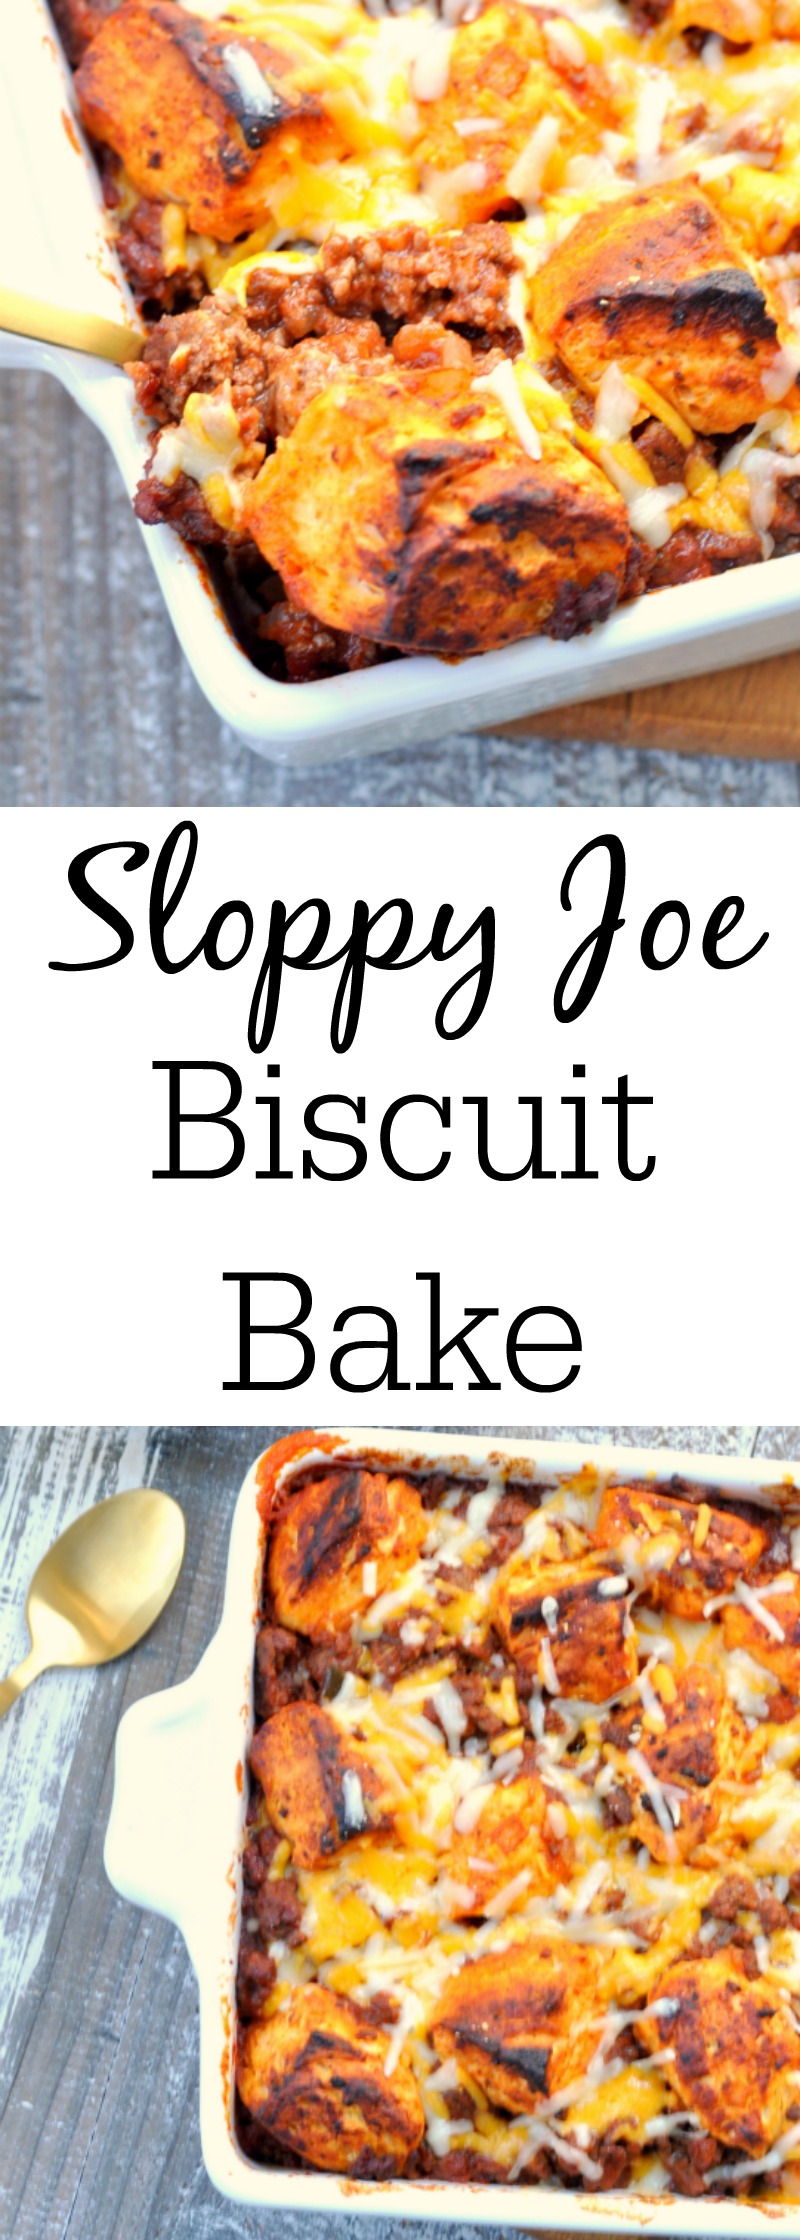 Sloppy Joe Biscuit Bake